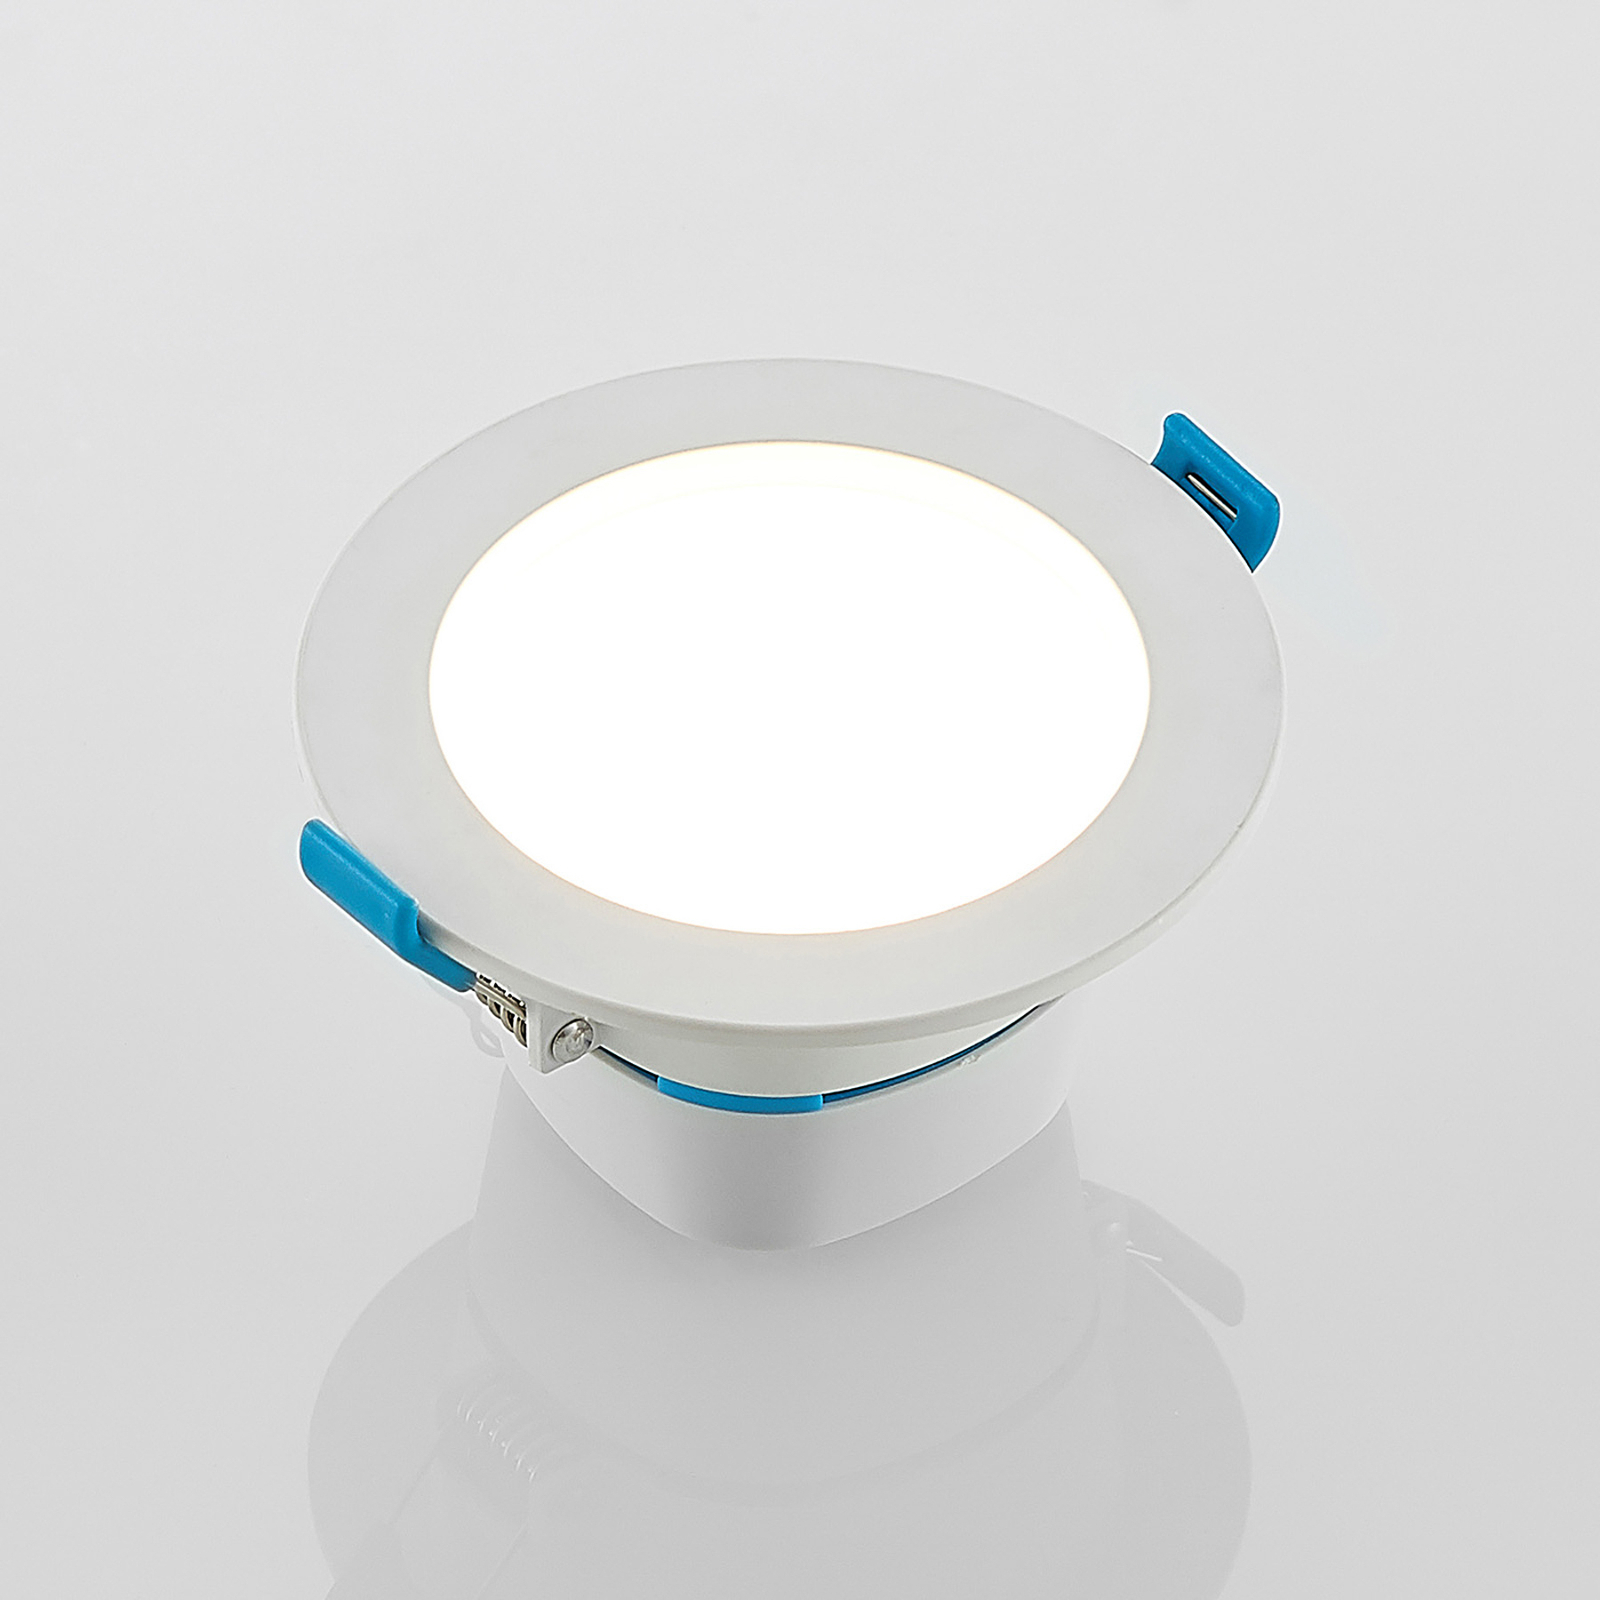 Arcchio LED-indbygningslampe Milaine, hvid, dæmpbar, sæt med 3 stk